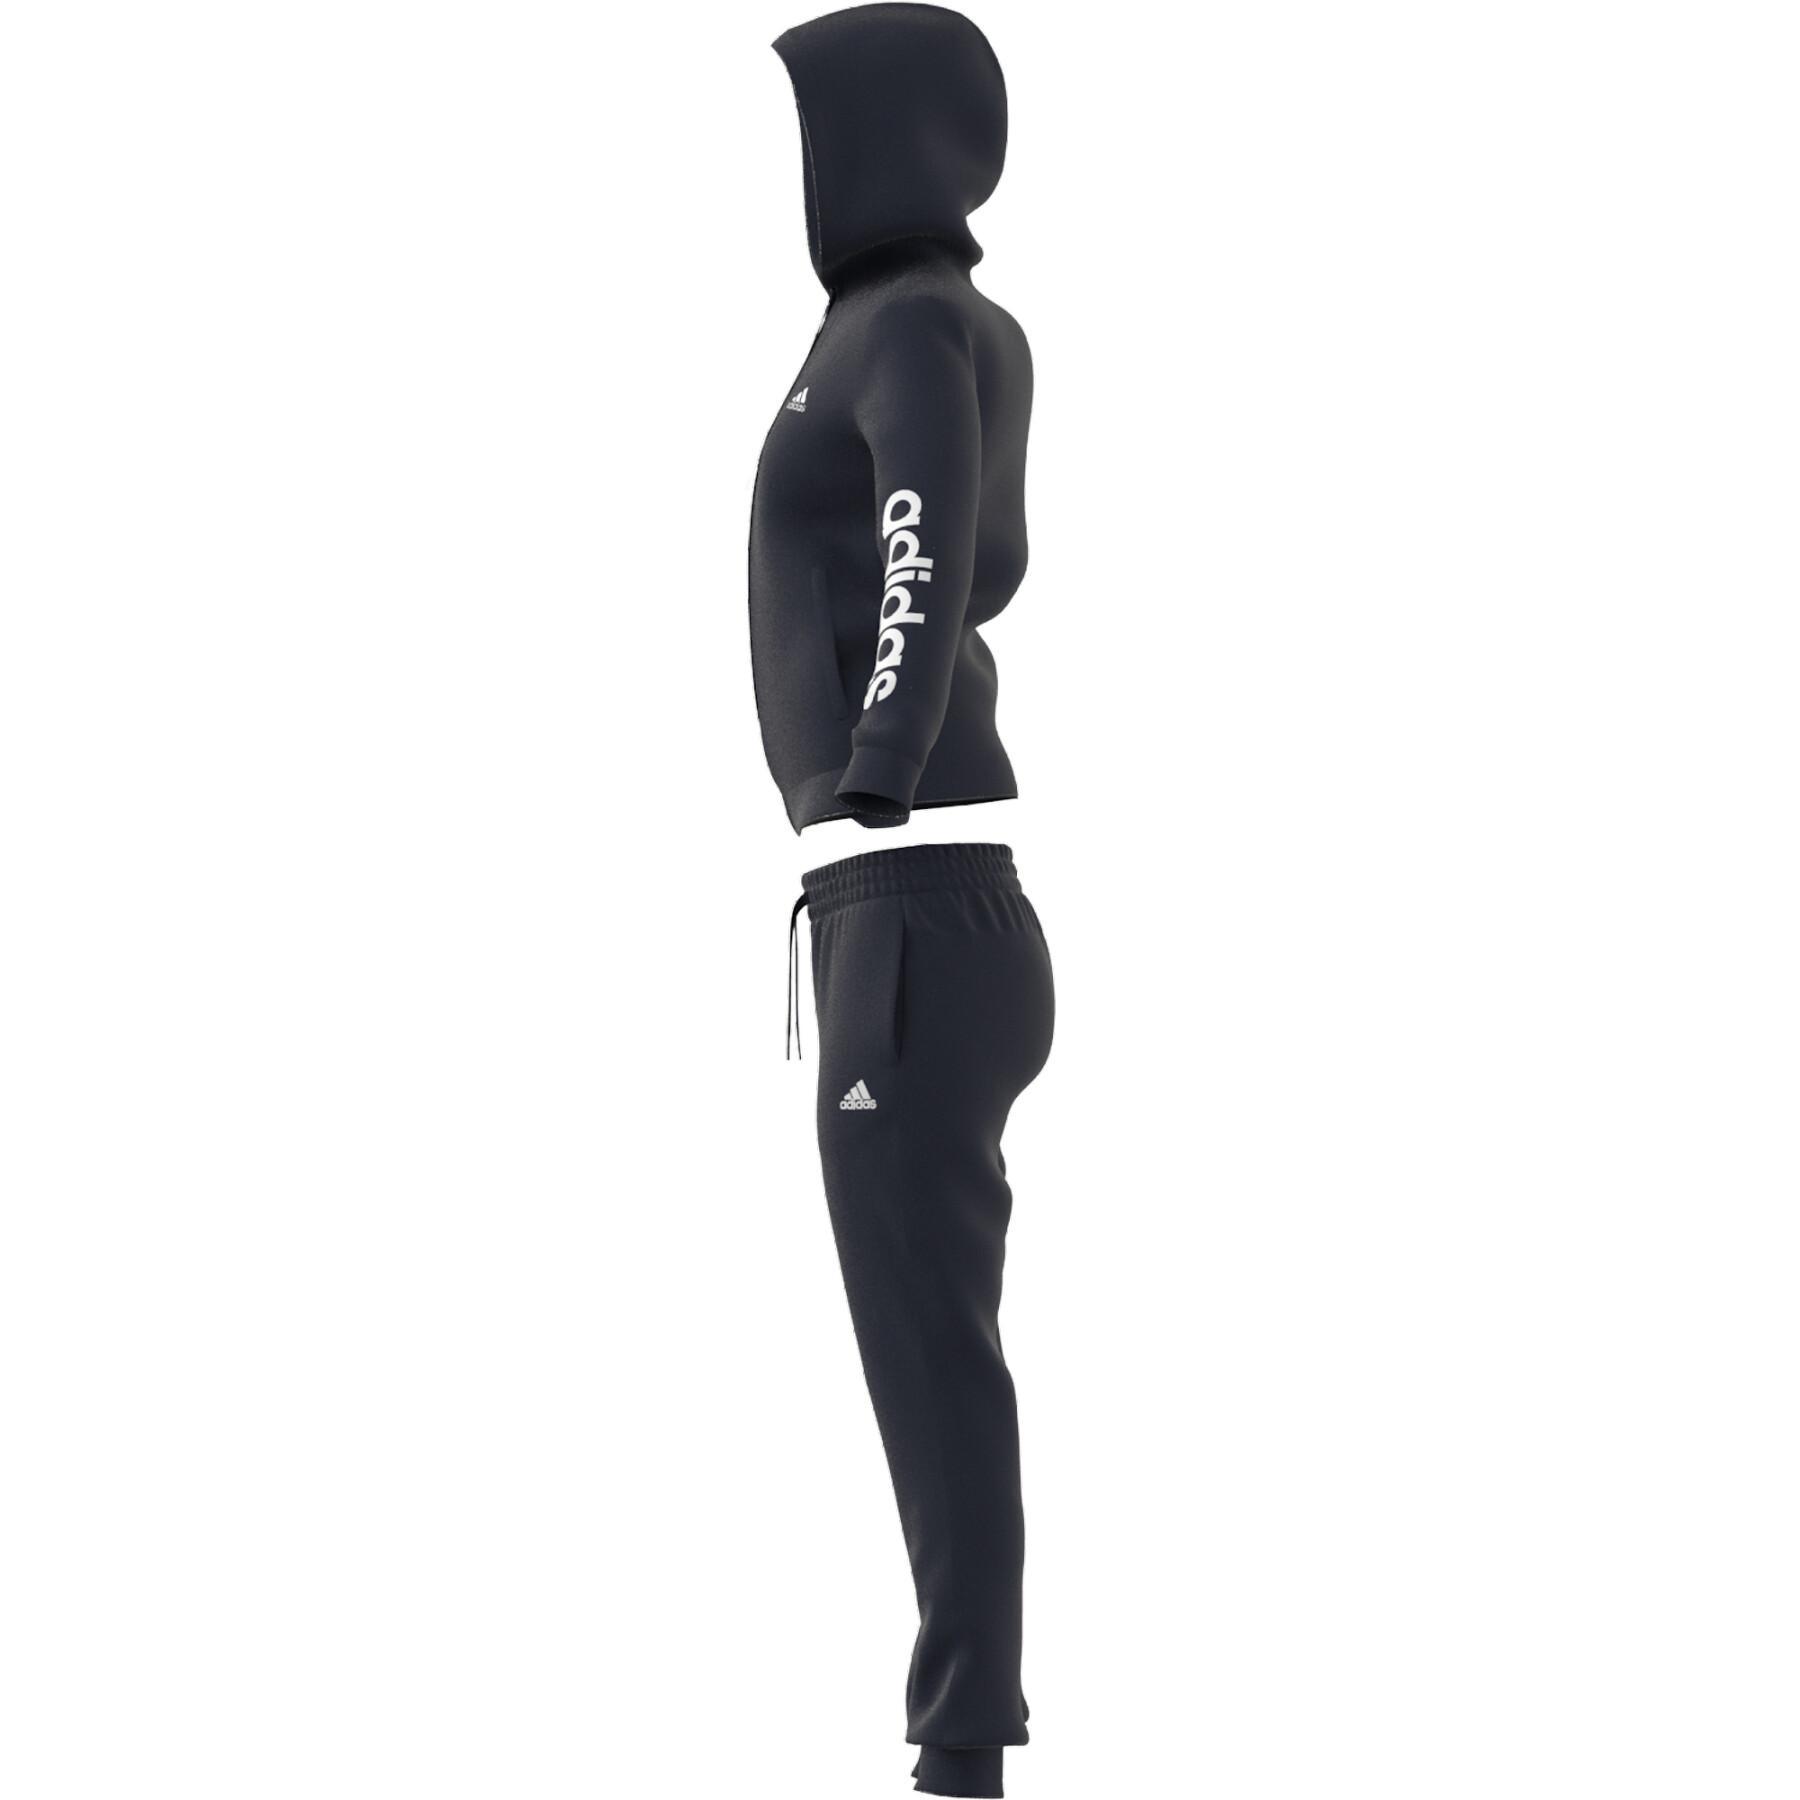 Logo adidas - Damen-Trainingsanzug French Bekleidung - Textilien Trainingsanzüge Jacken - Essentials Terry und